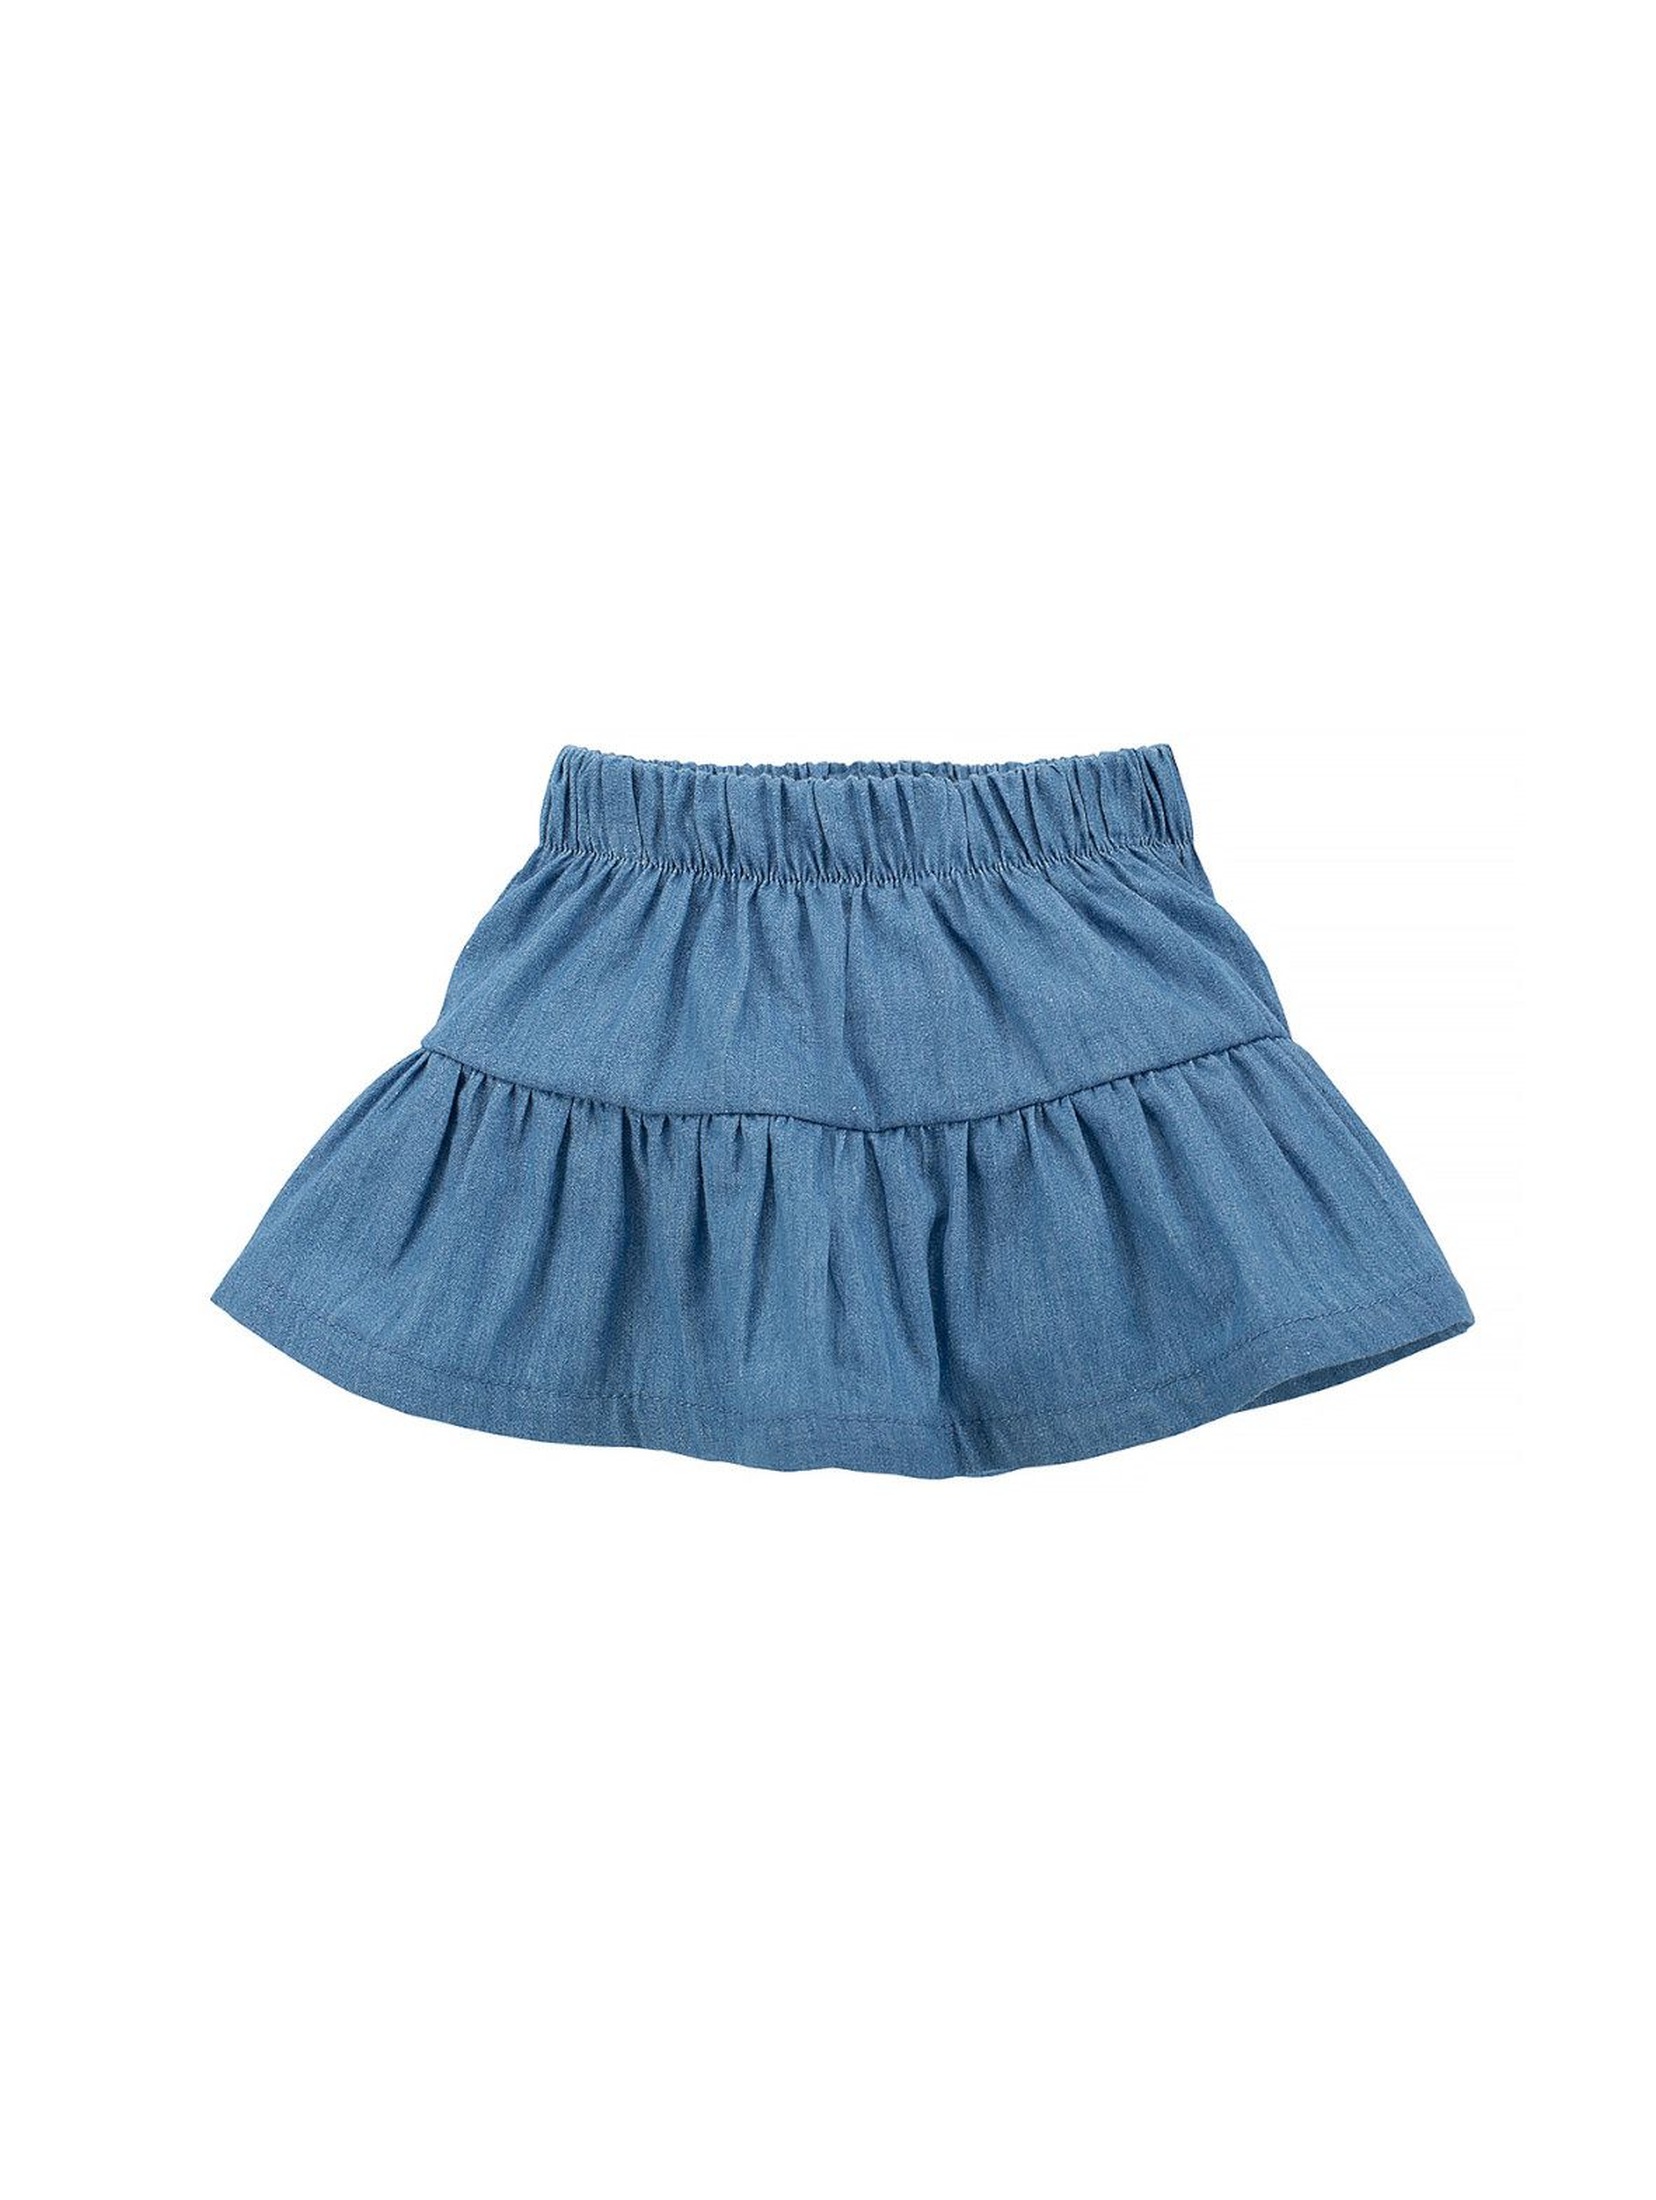 Bawełniana spódniczka dla dziewczynki niebieska